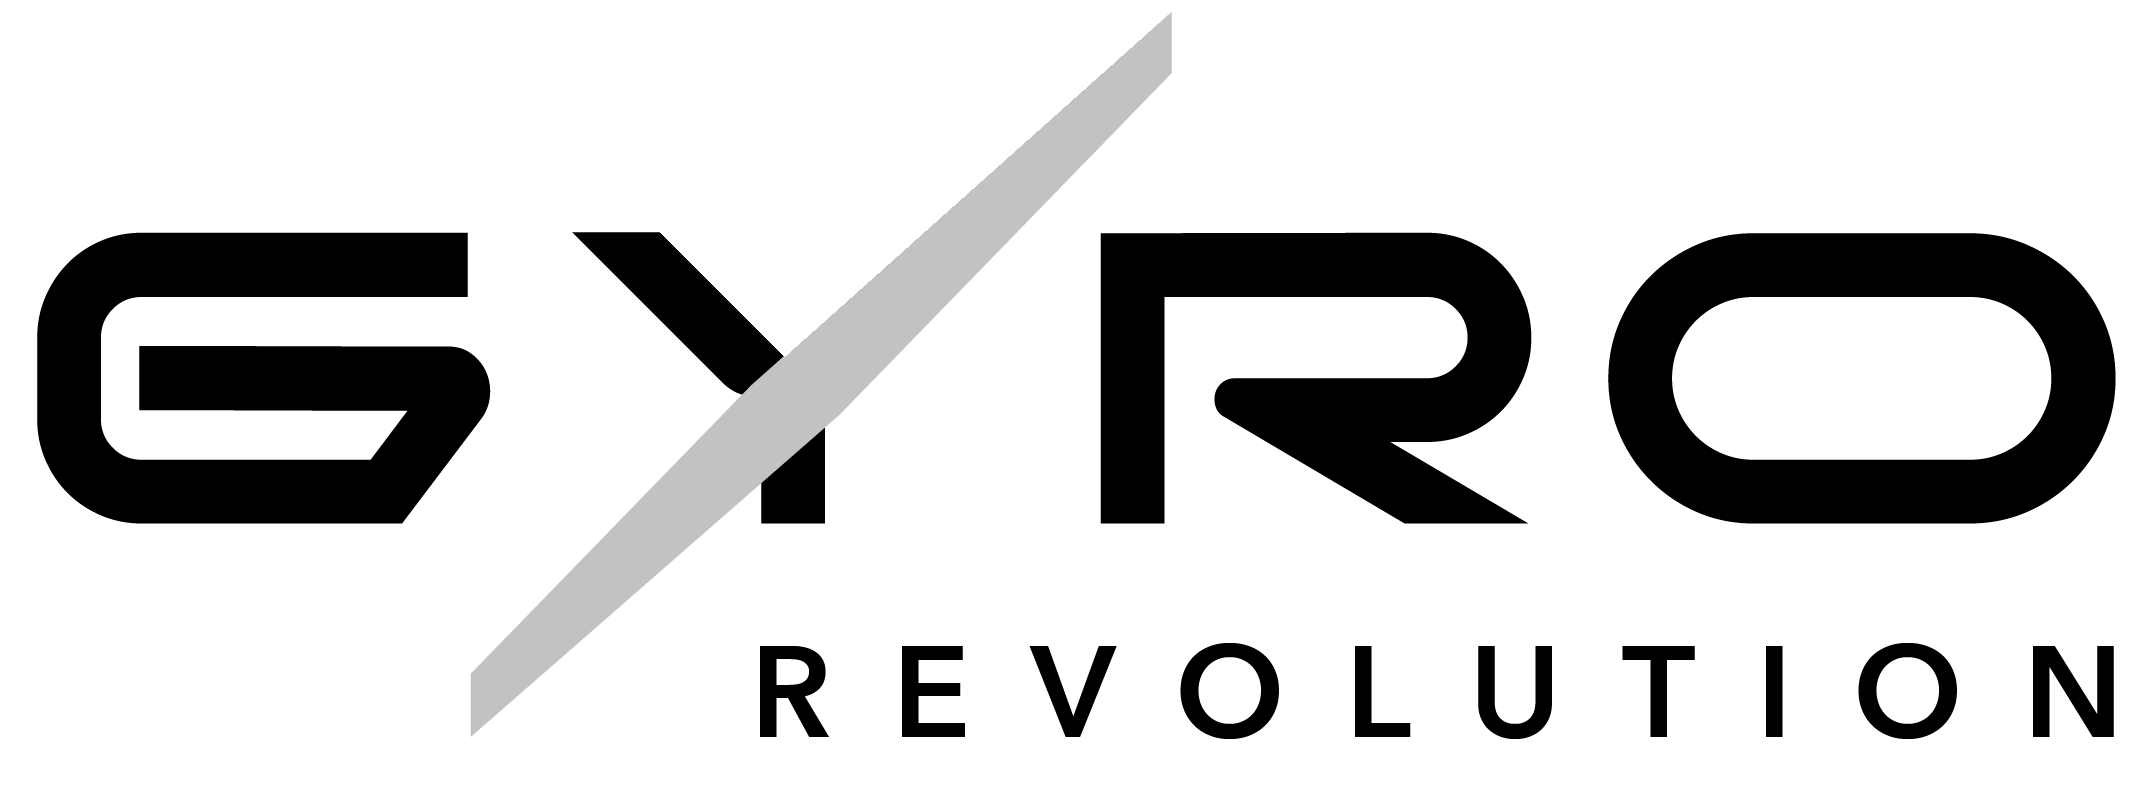 Gyro Revolution